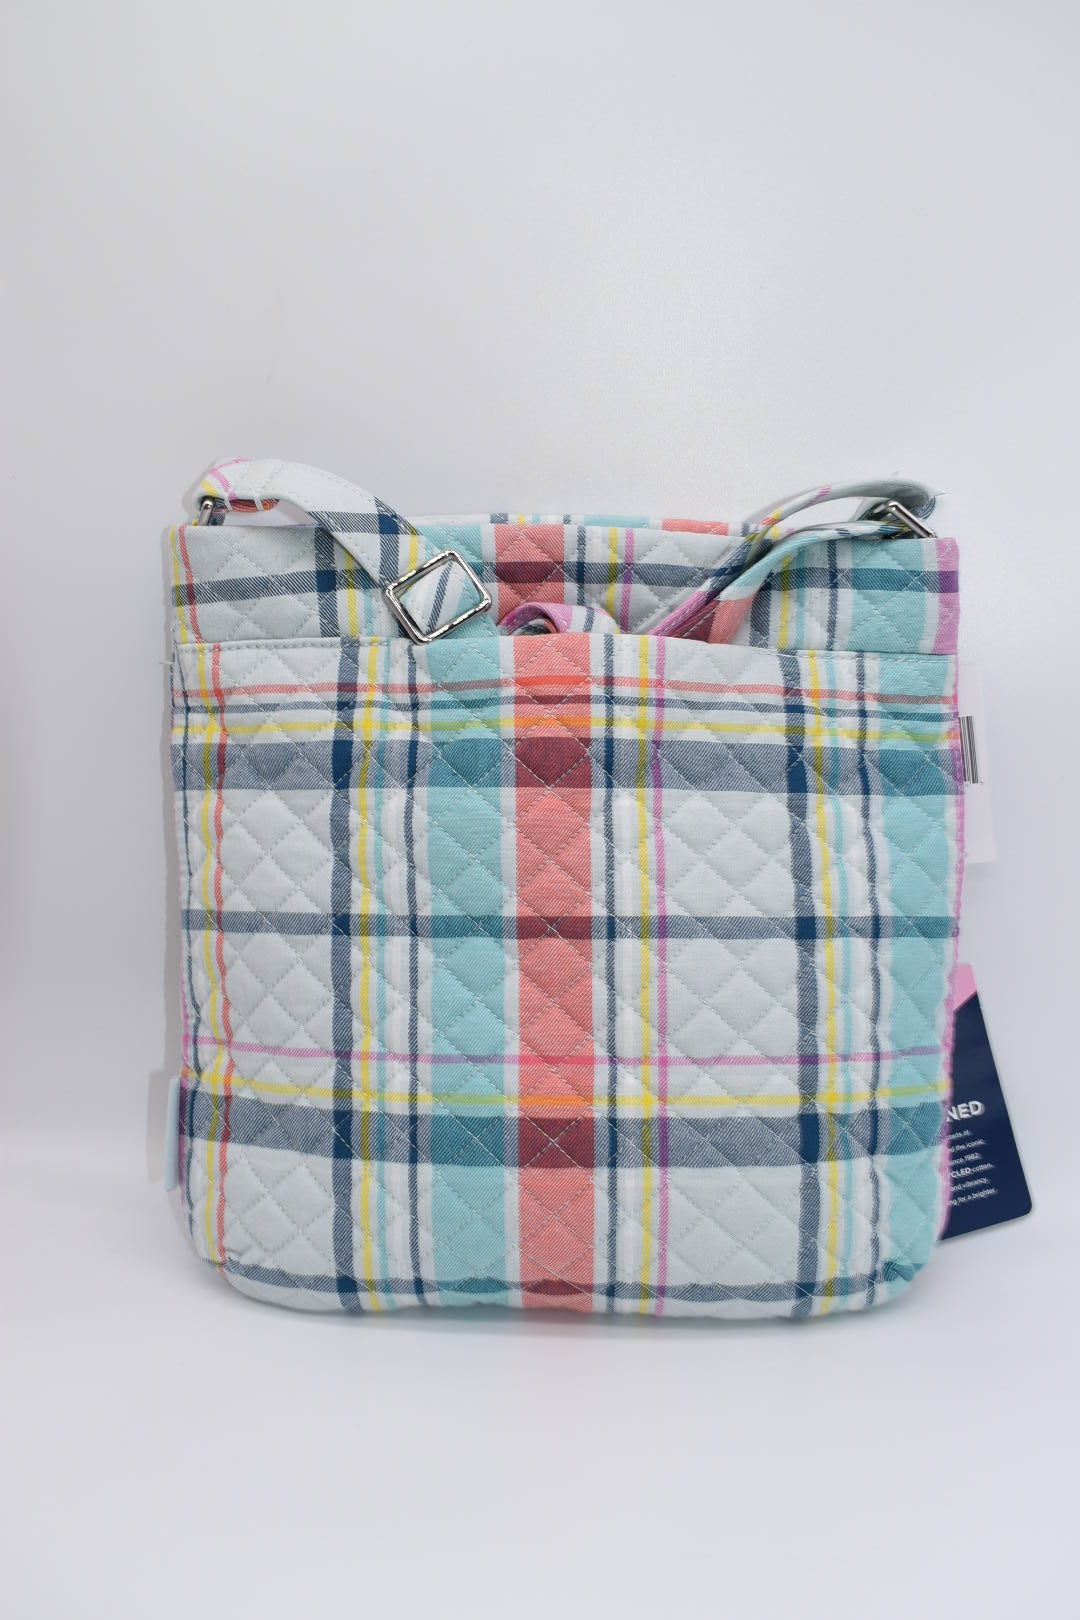 Vera Bradley Triple Zip Crossbody Bag in "Pastel Paisley" Pattern